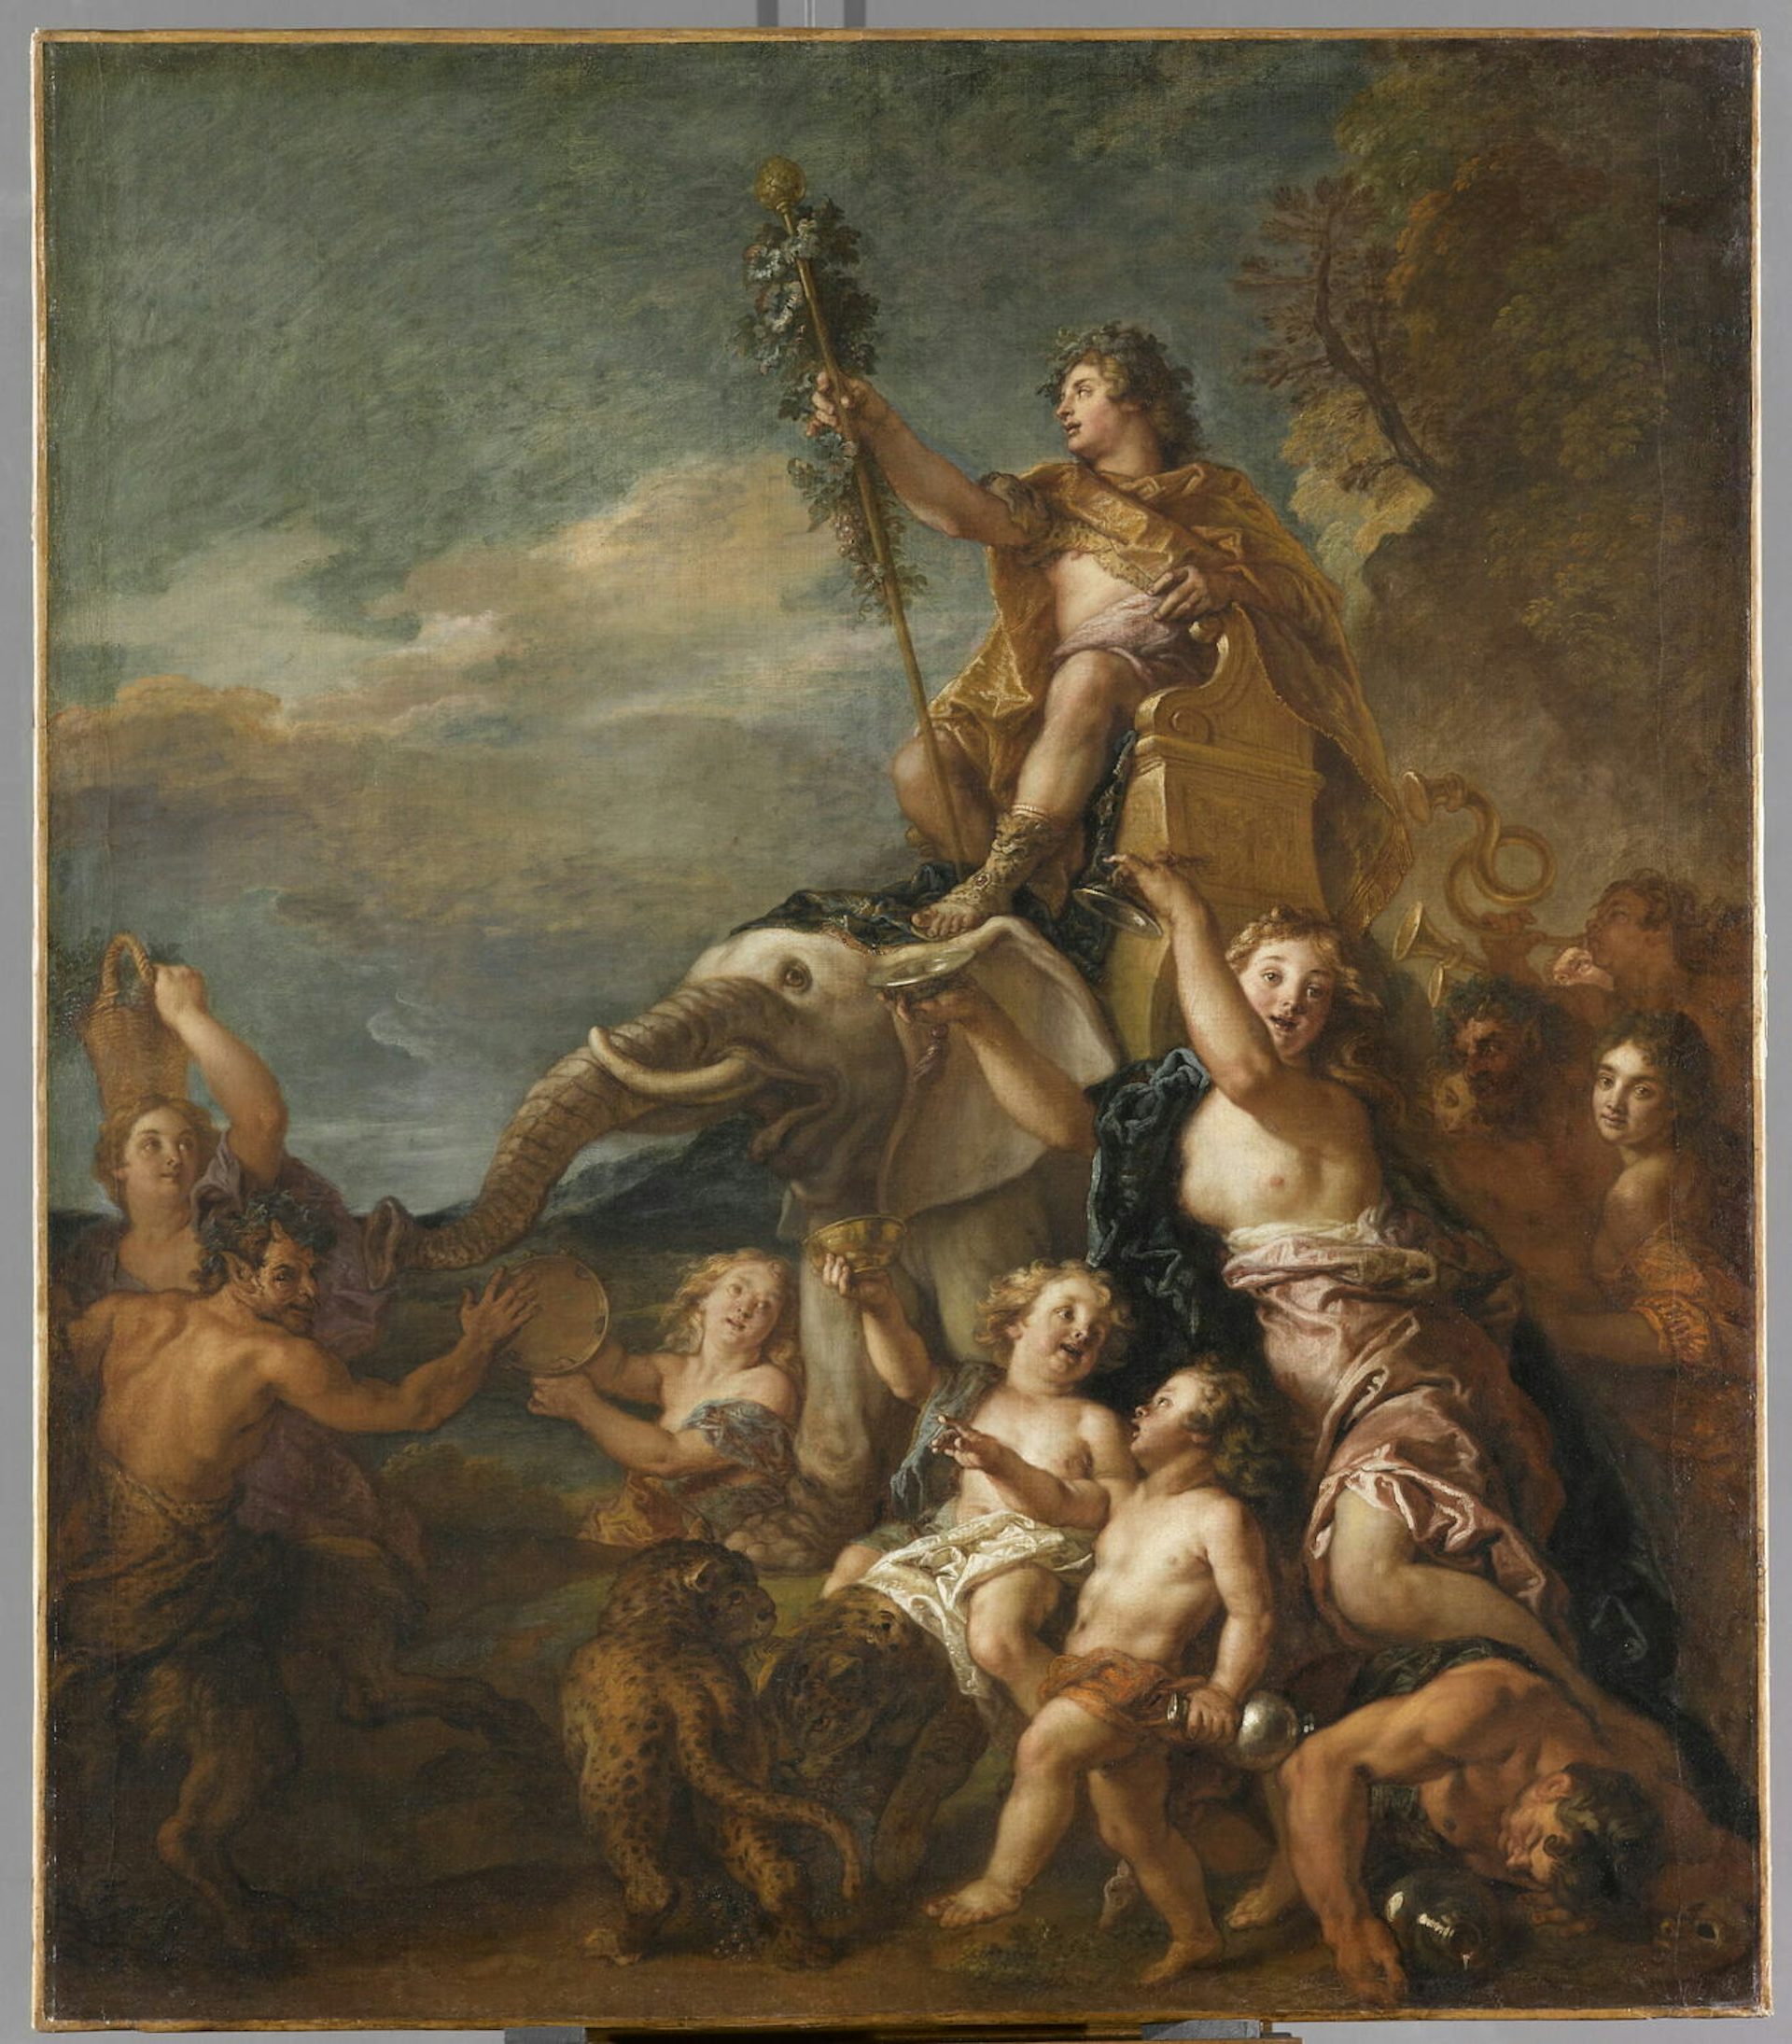 The Triumph of Bacchus by Charles de la Fosse